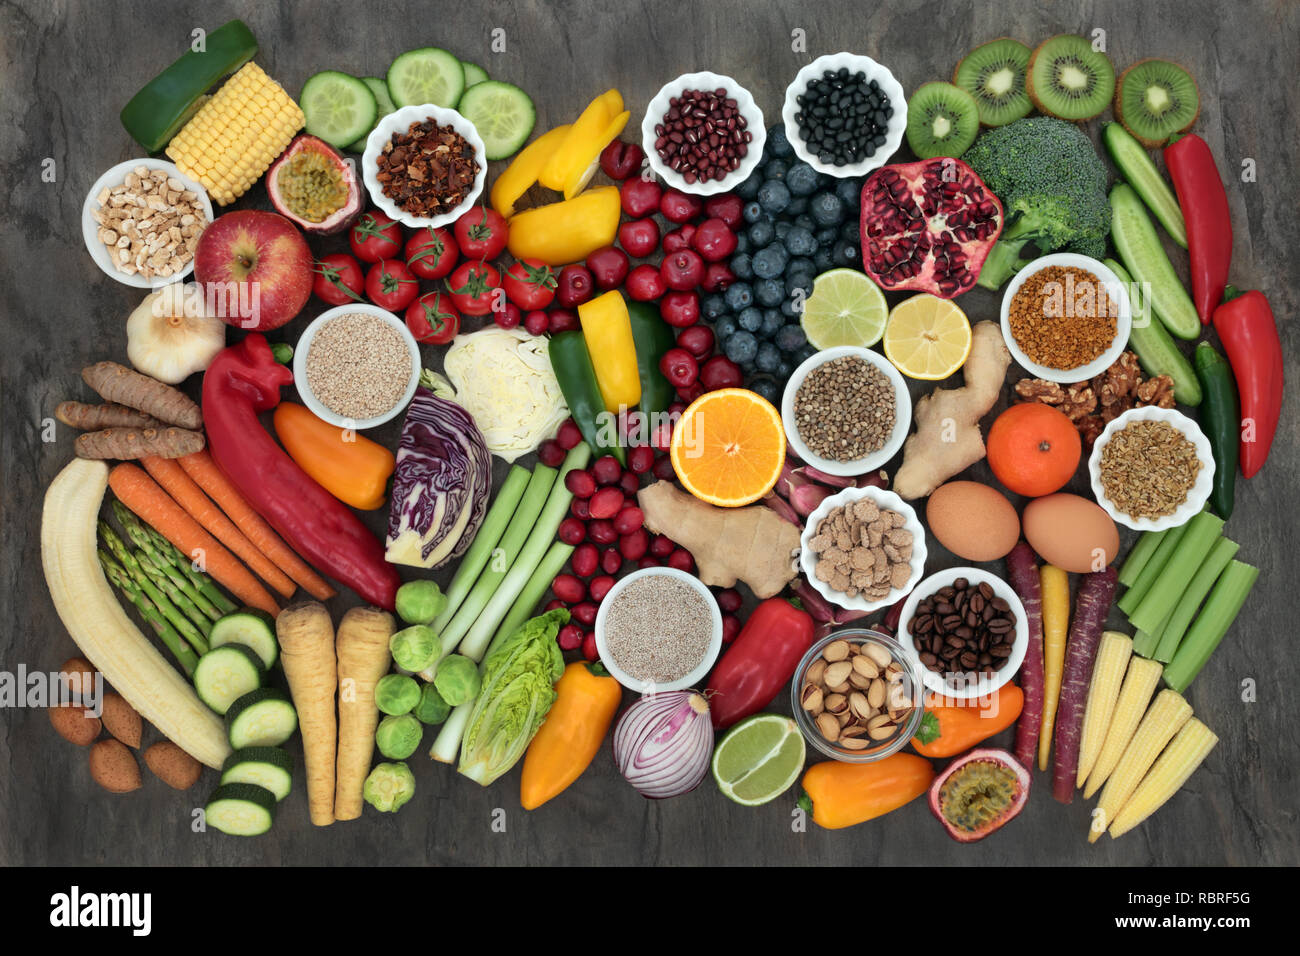 Großen super Health Food Collection mit frischem Obst, Gemüse, Samen, Getreide, Milchprodukte, Kaffee, Nüsse, Hülsenfrüchte, Getreide, Kräuter und Gewürze. Stockfoto